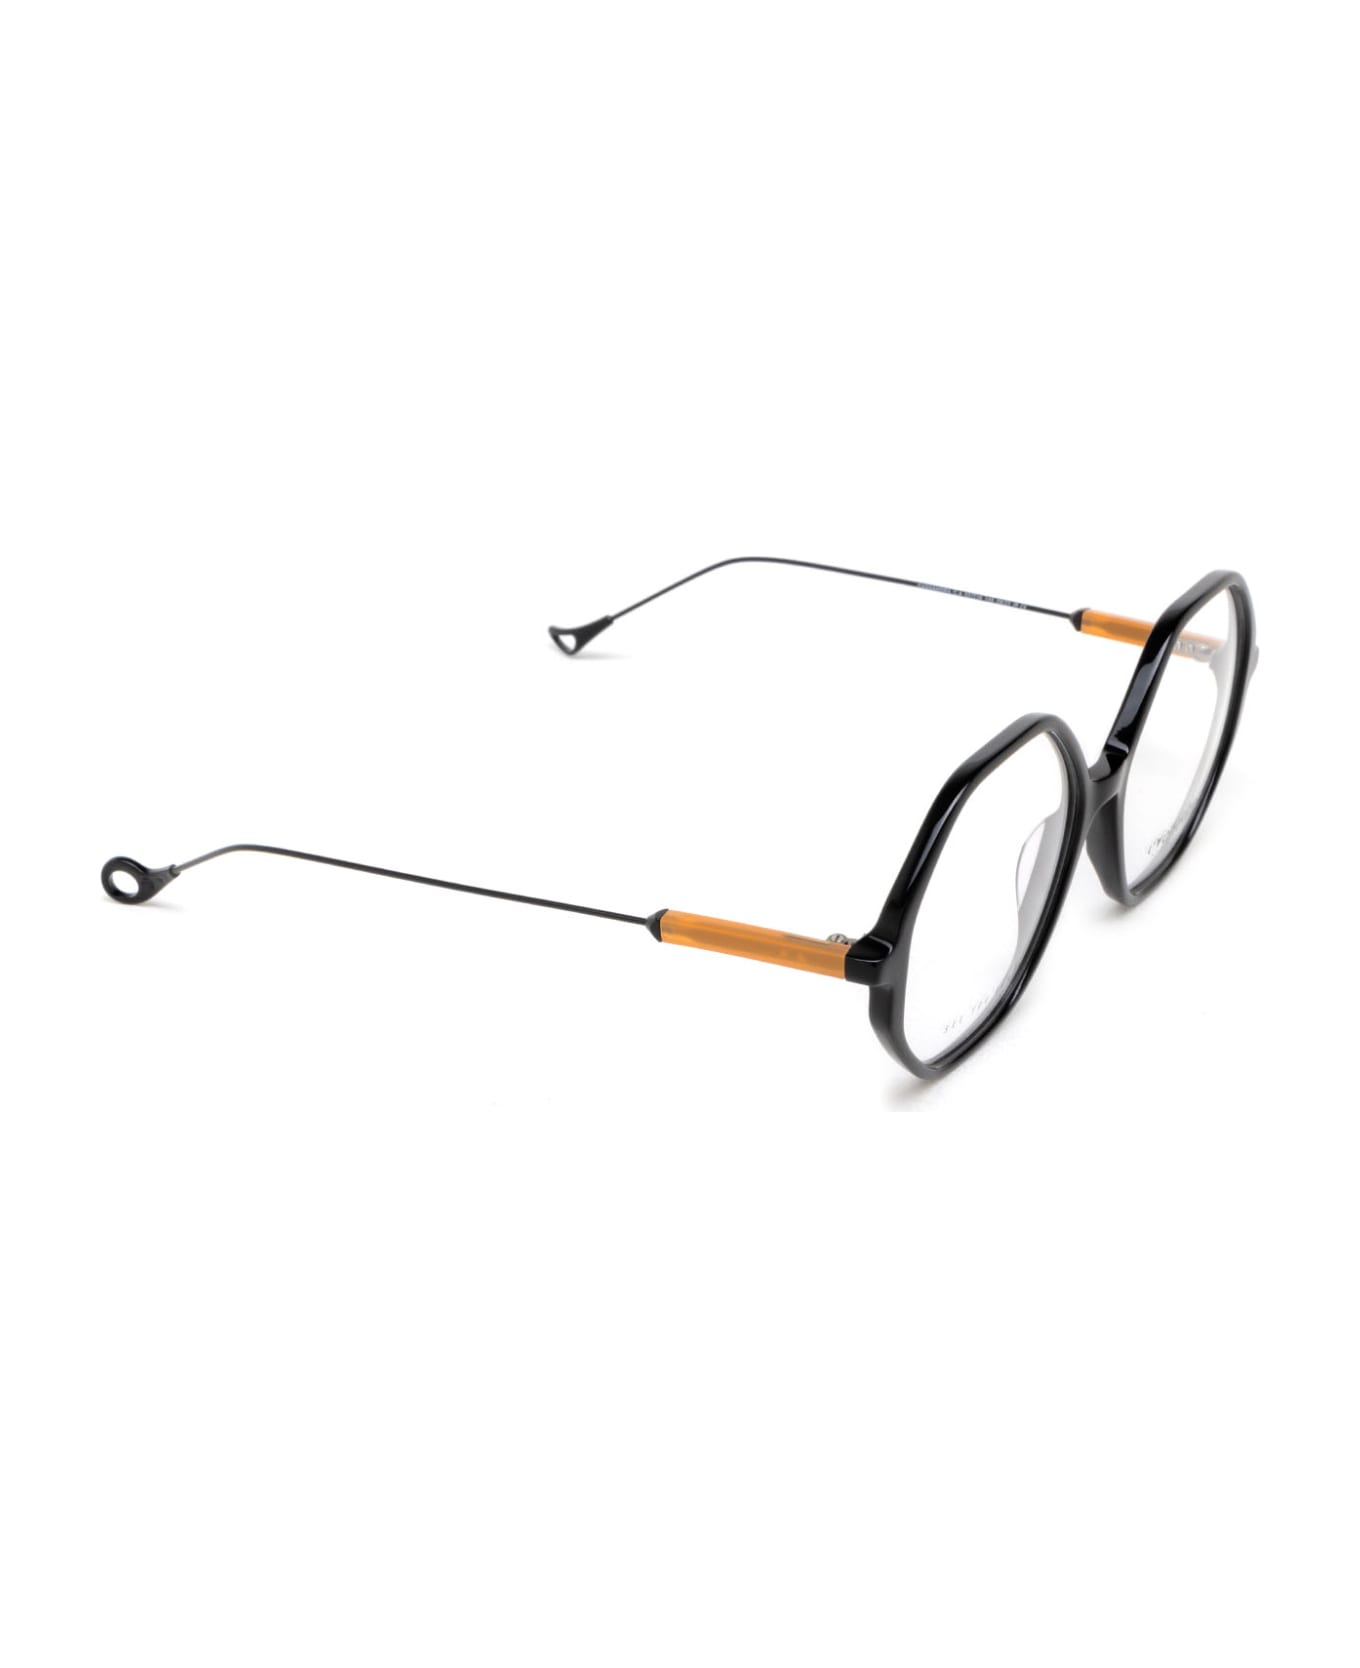 Eyepetizer Cassandra Black Glasses - Black アイウェア